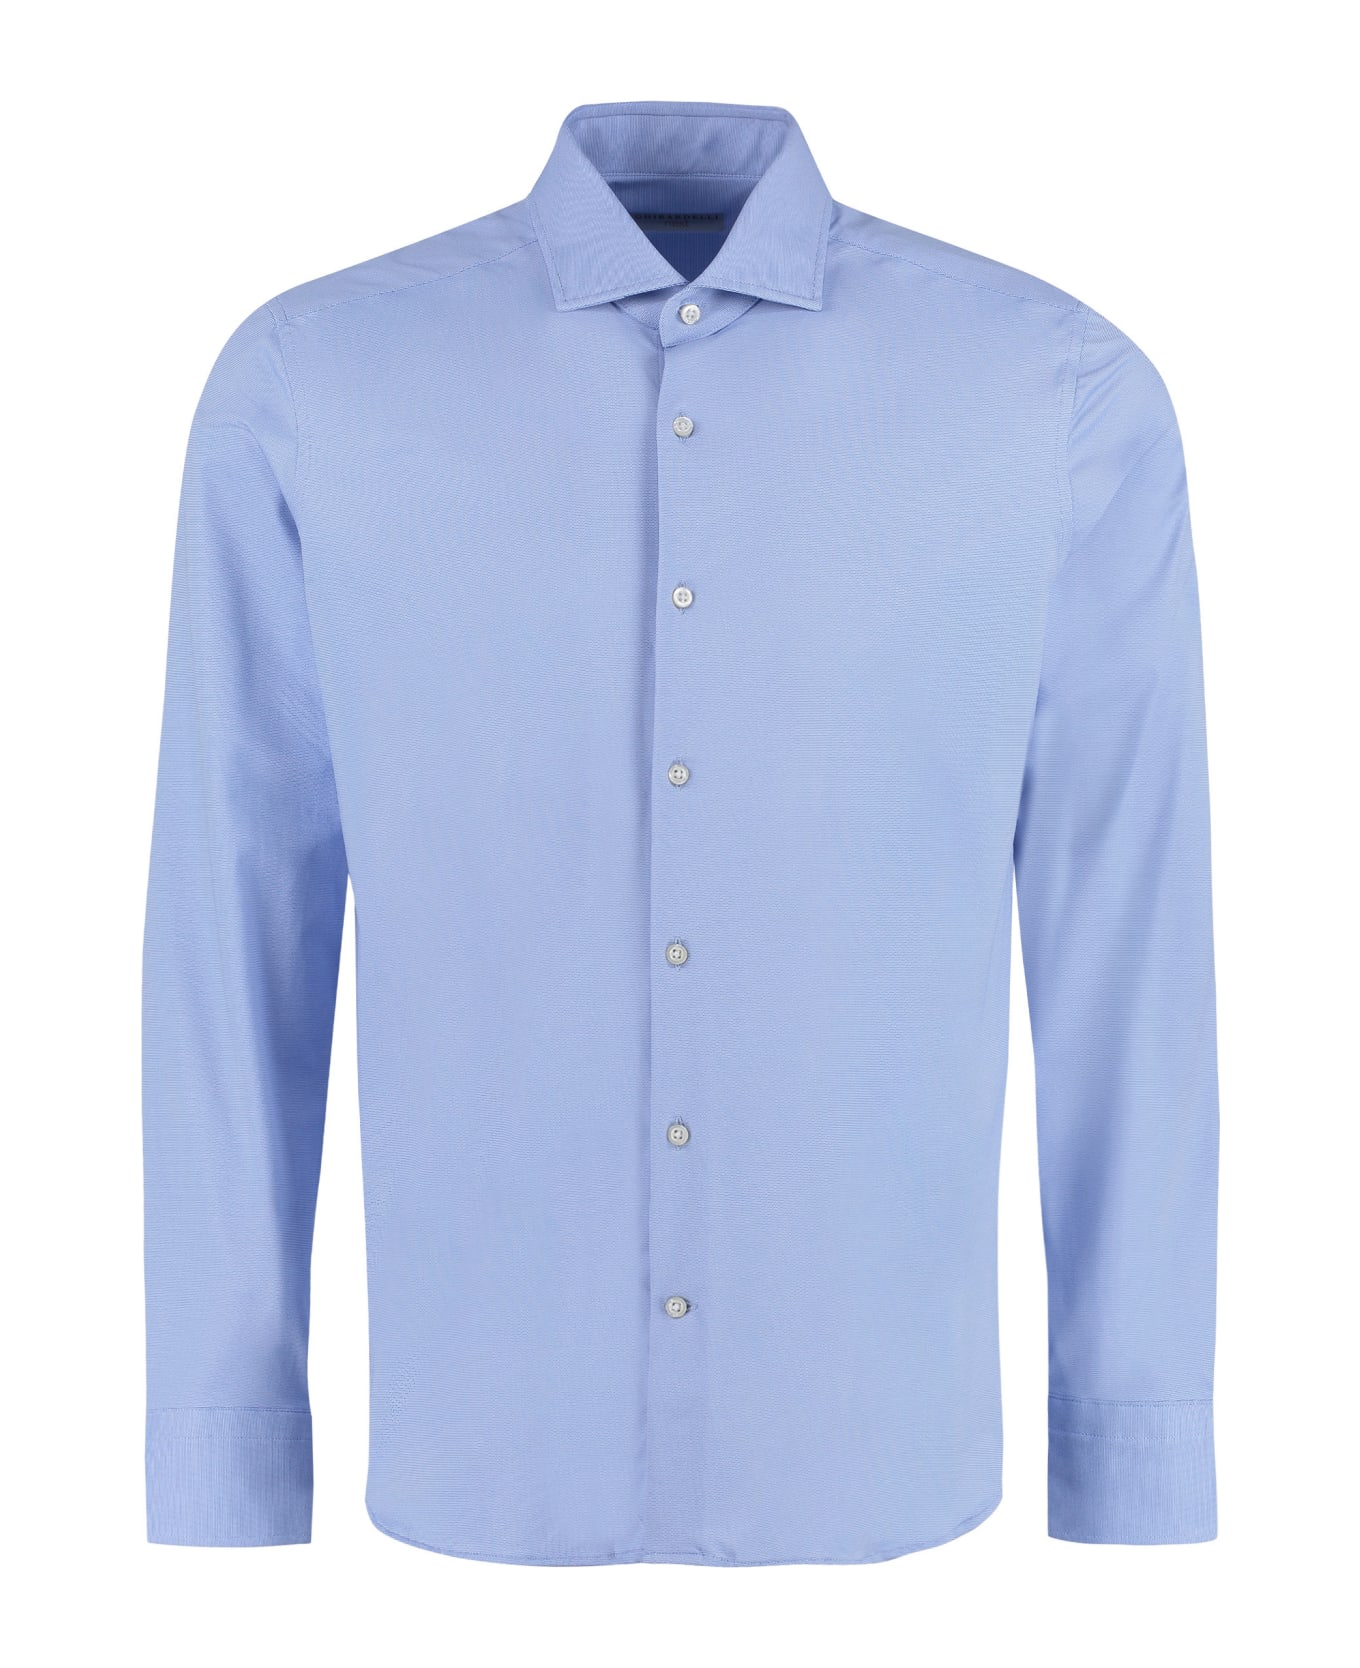 Sonrisa Viscose Jersey Shirt - Light Blue シャツ